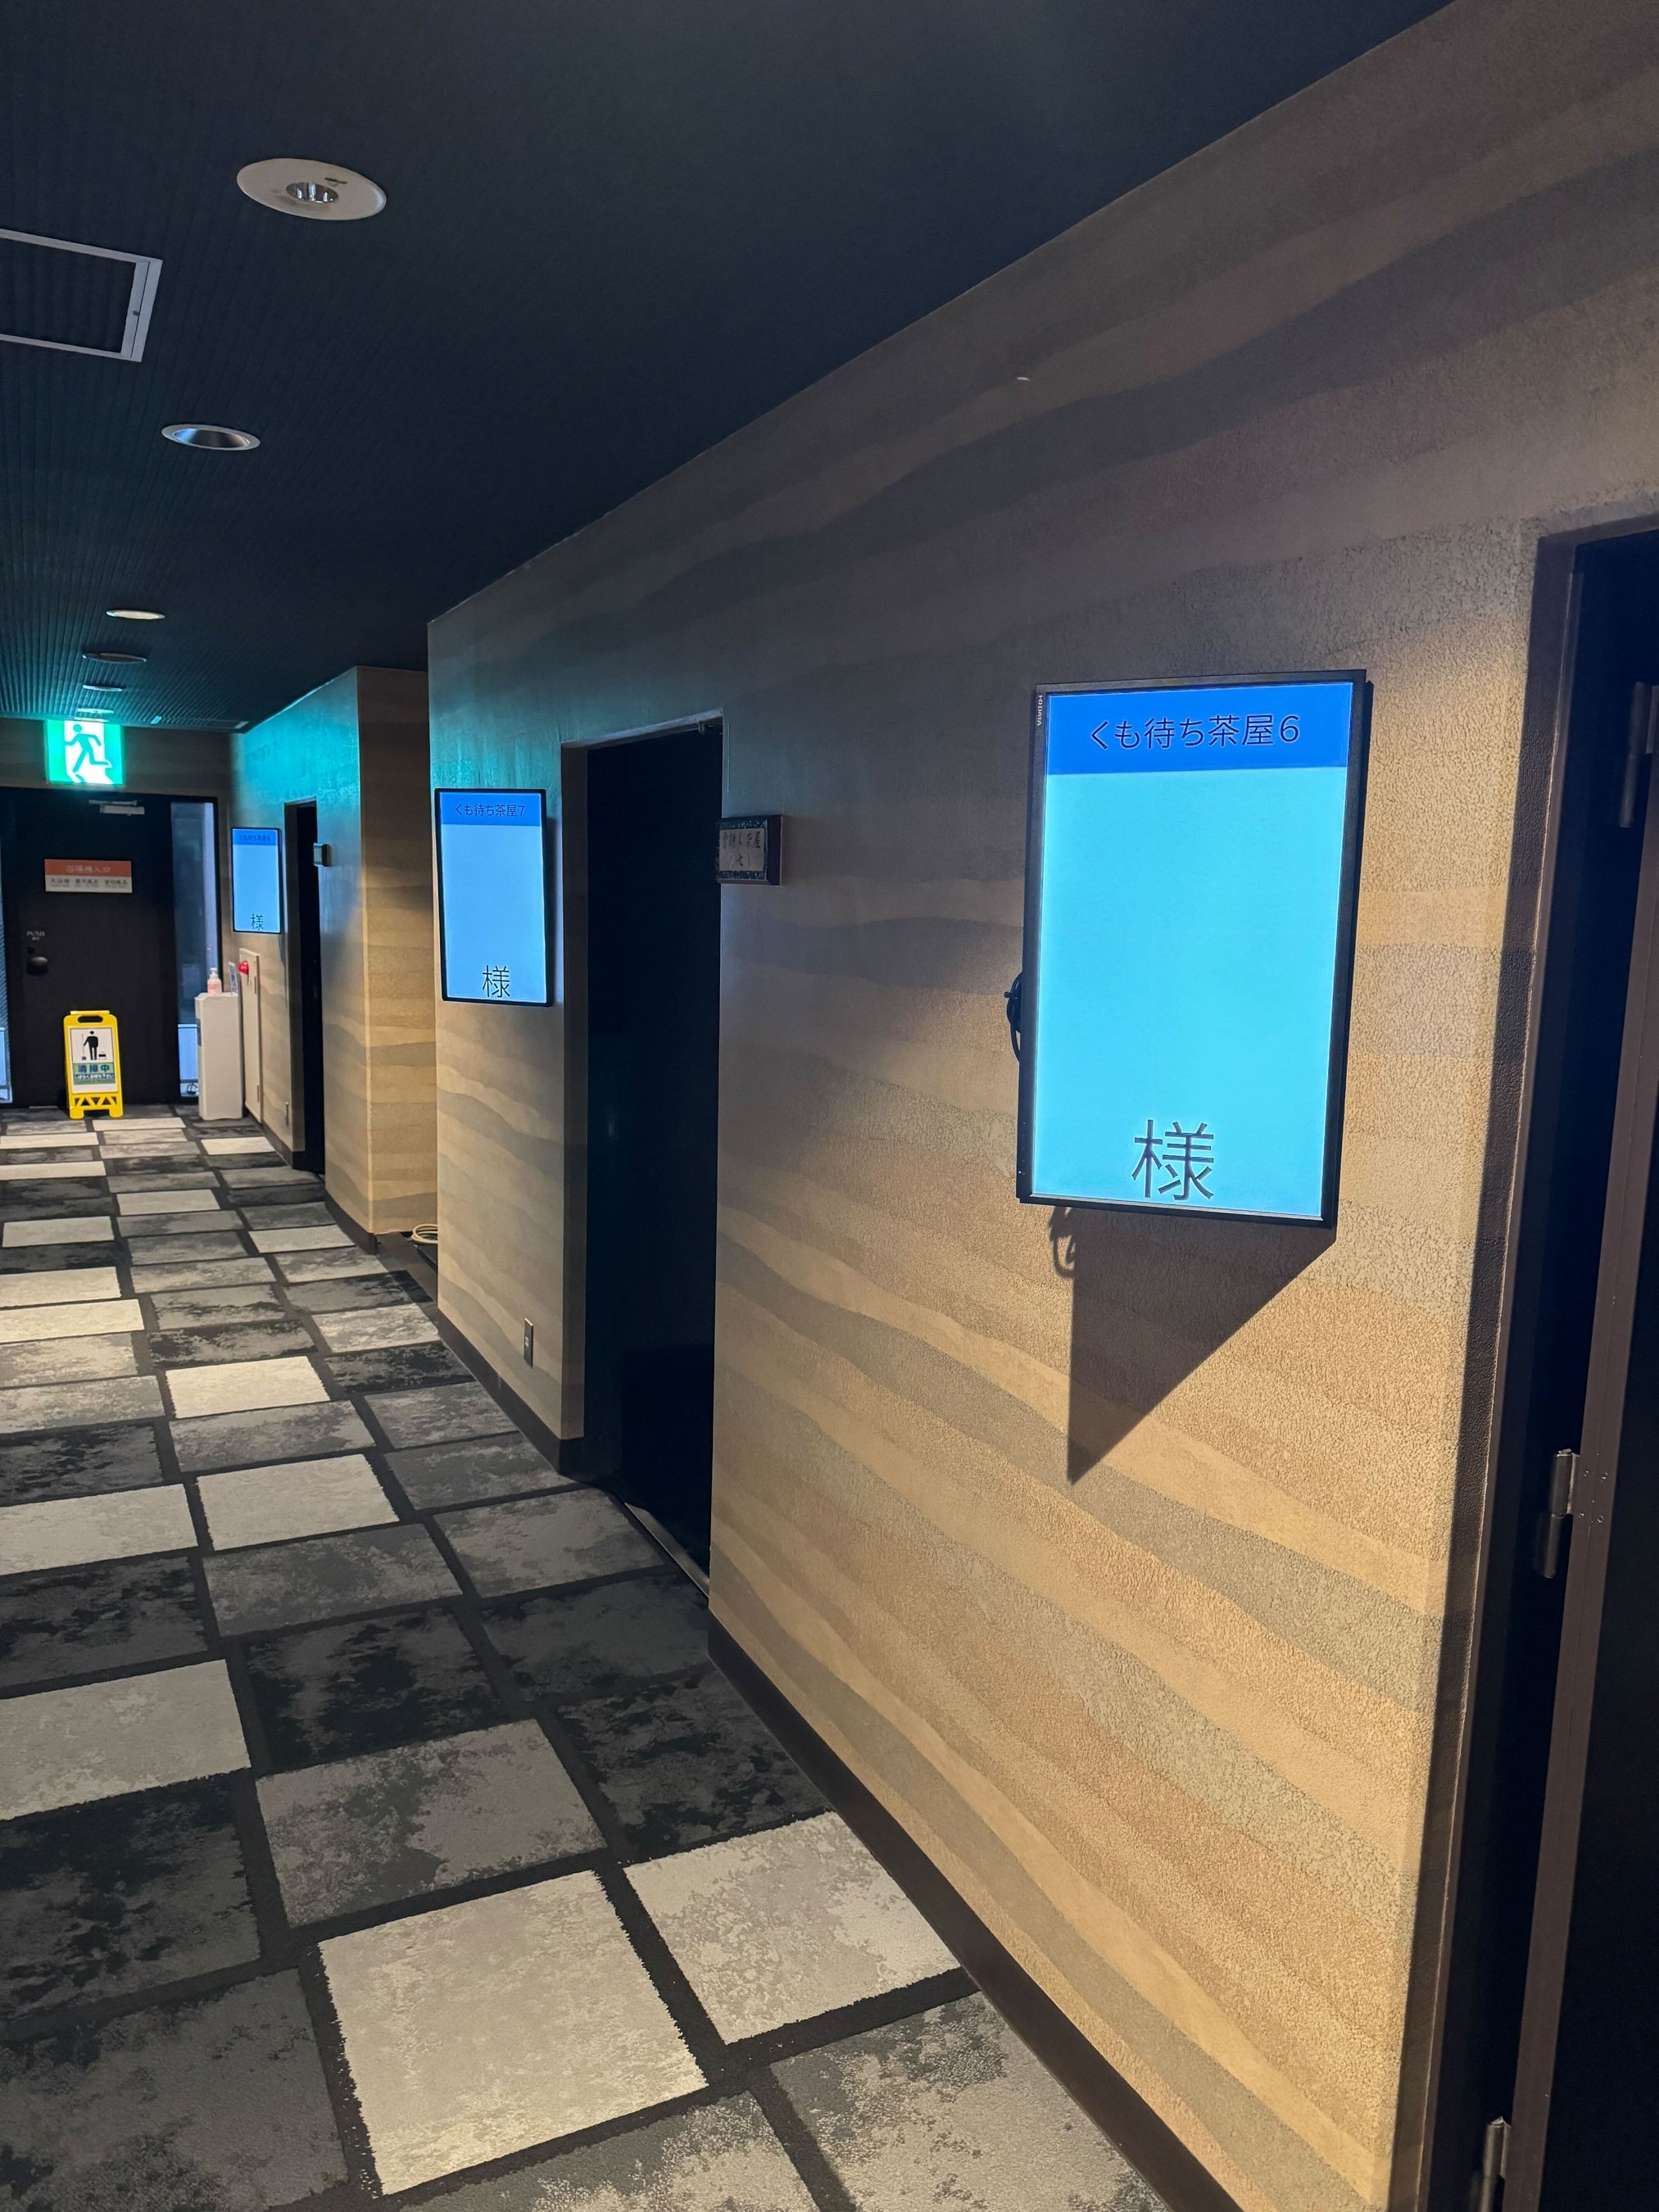 セルフオーダーシステム開発会社のジェネックスがホテル・旅館向け新機能「とどろく行燈システム」をリリース